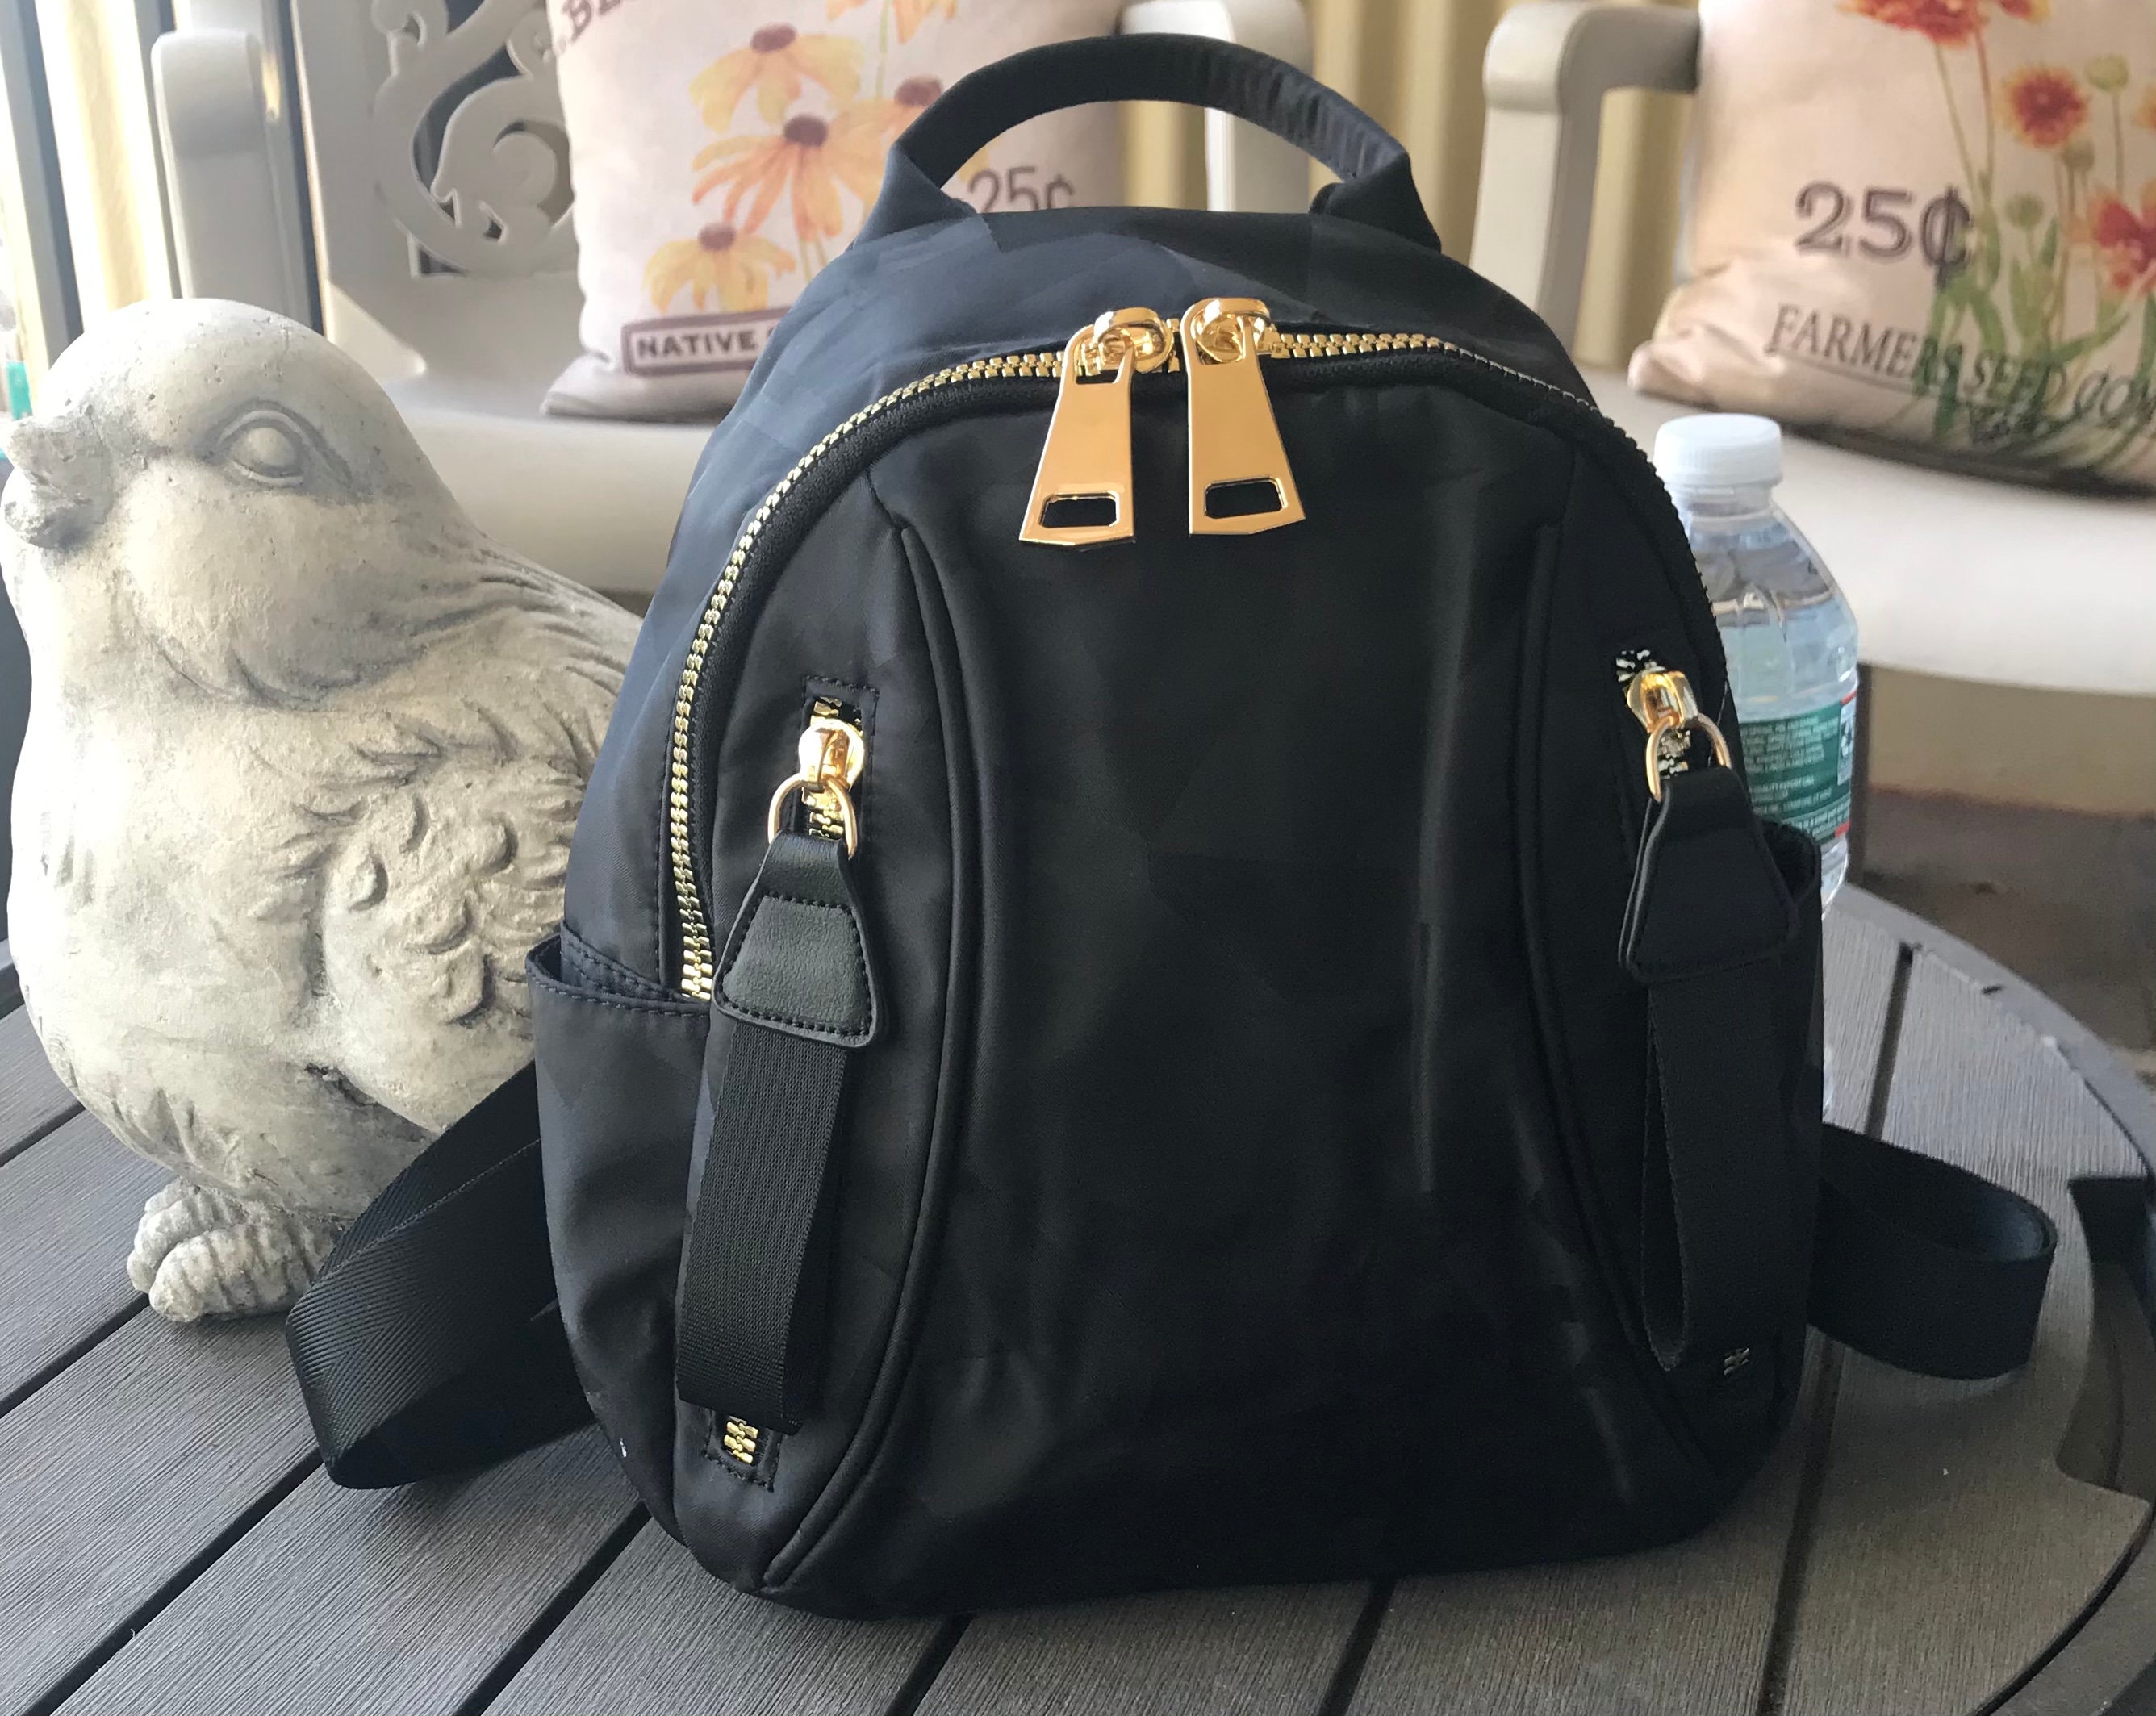 backpack gold hardware